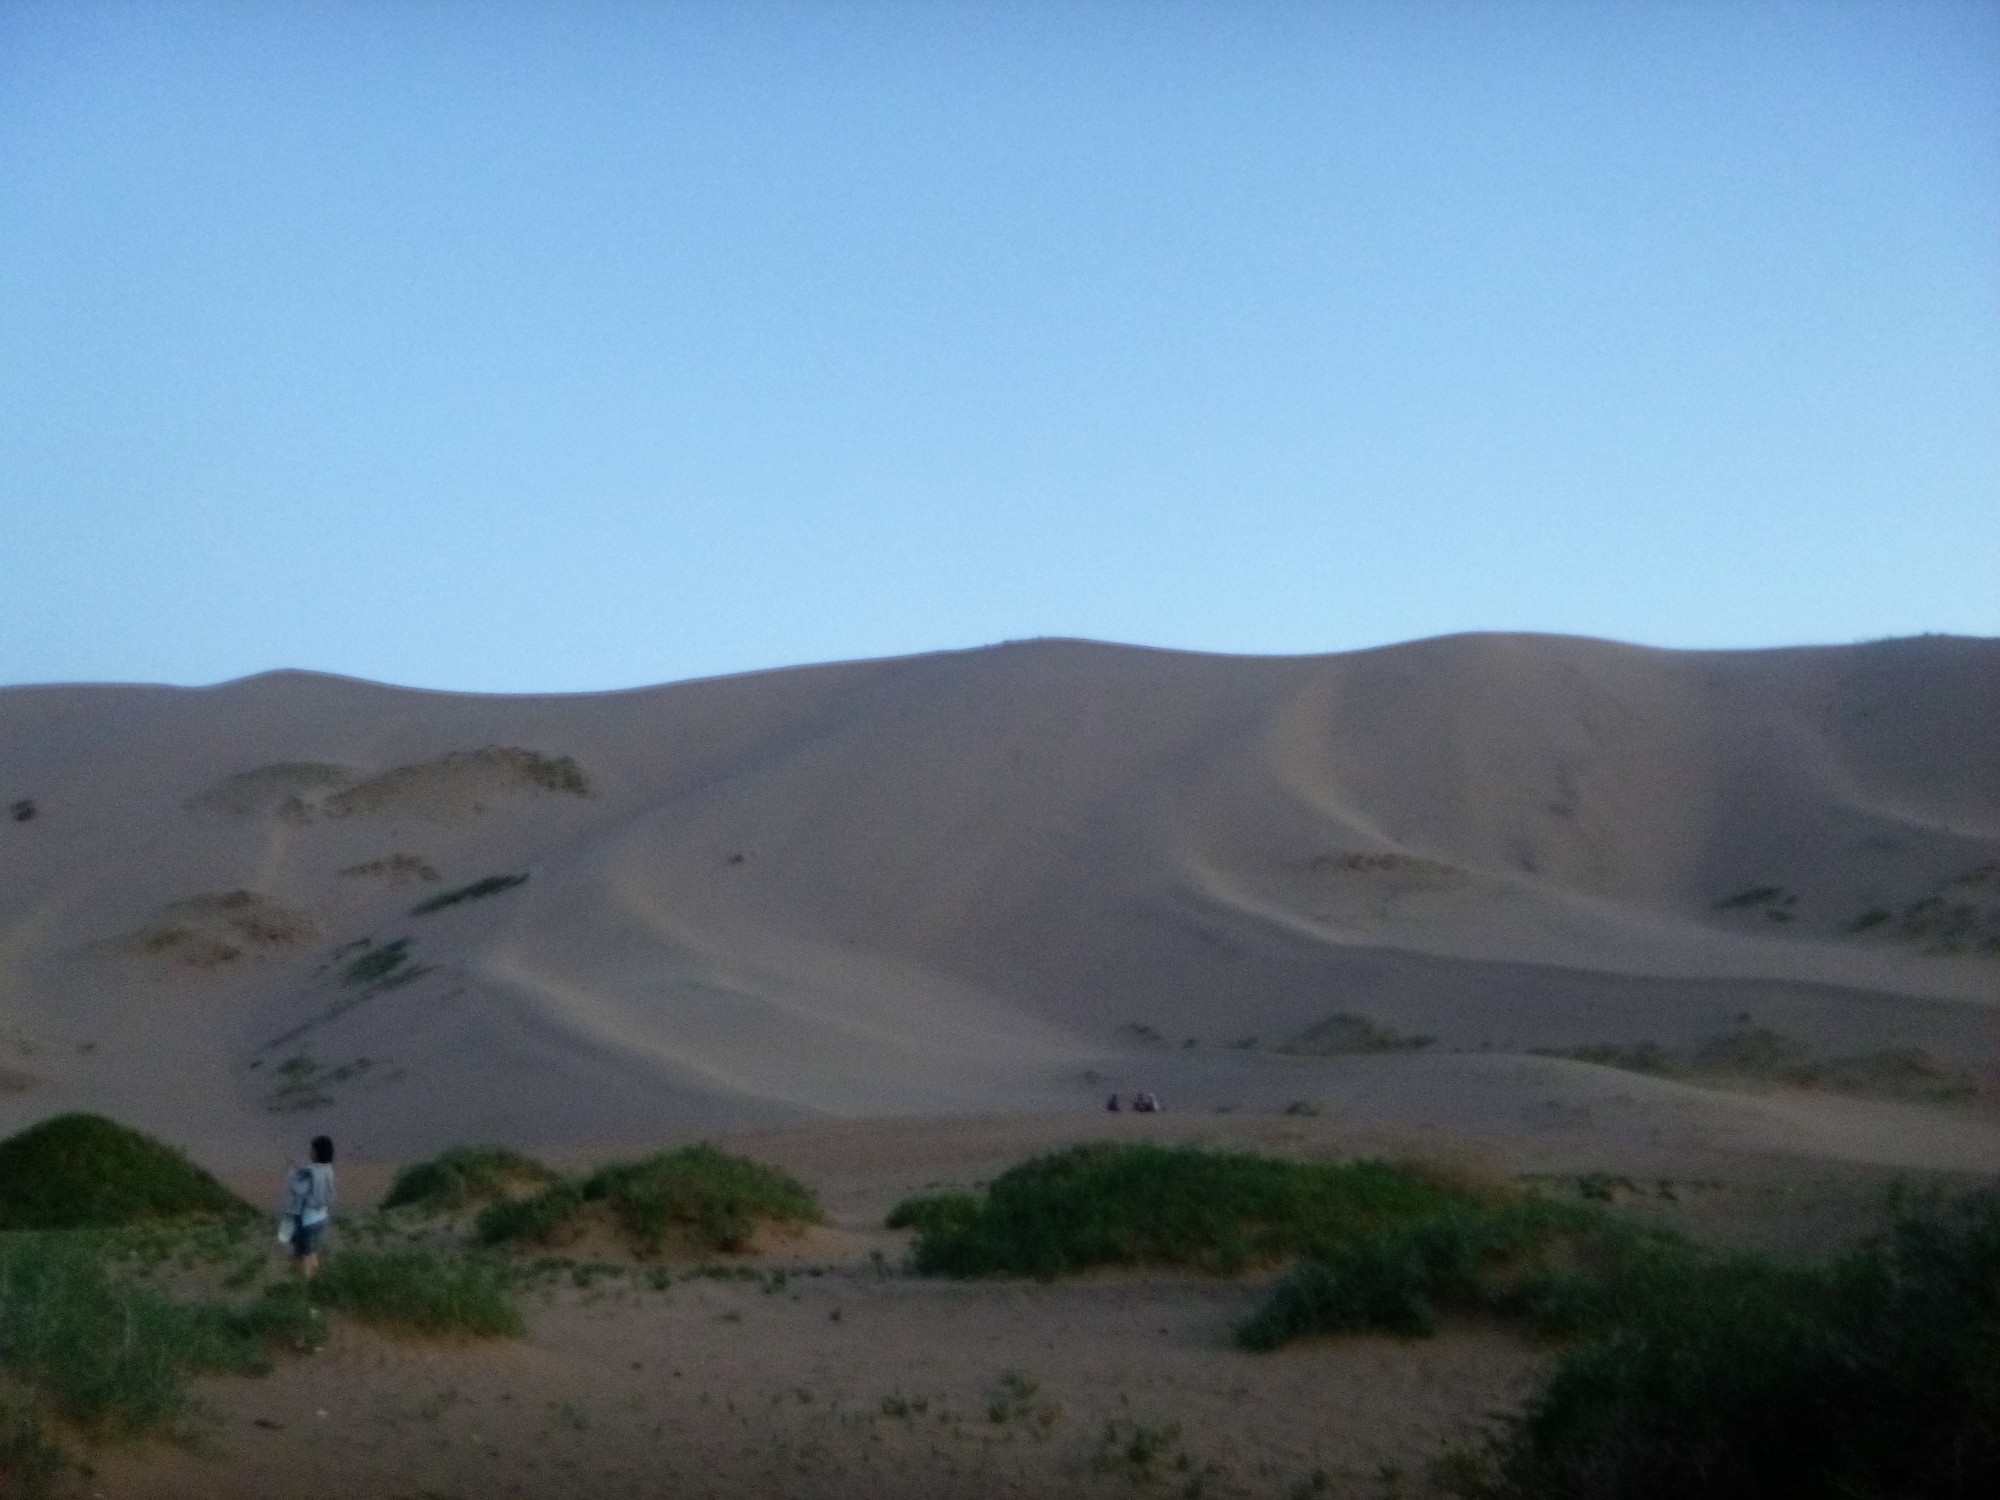 Khongor Els Sand Dunes, Mongolia